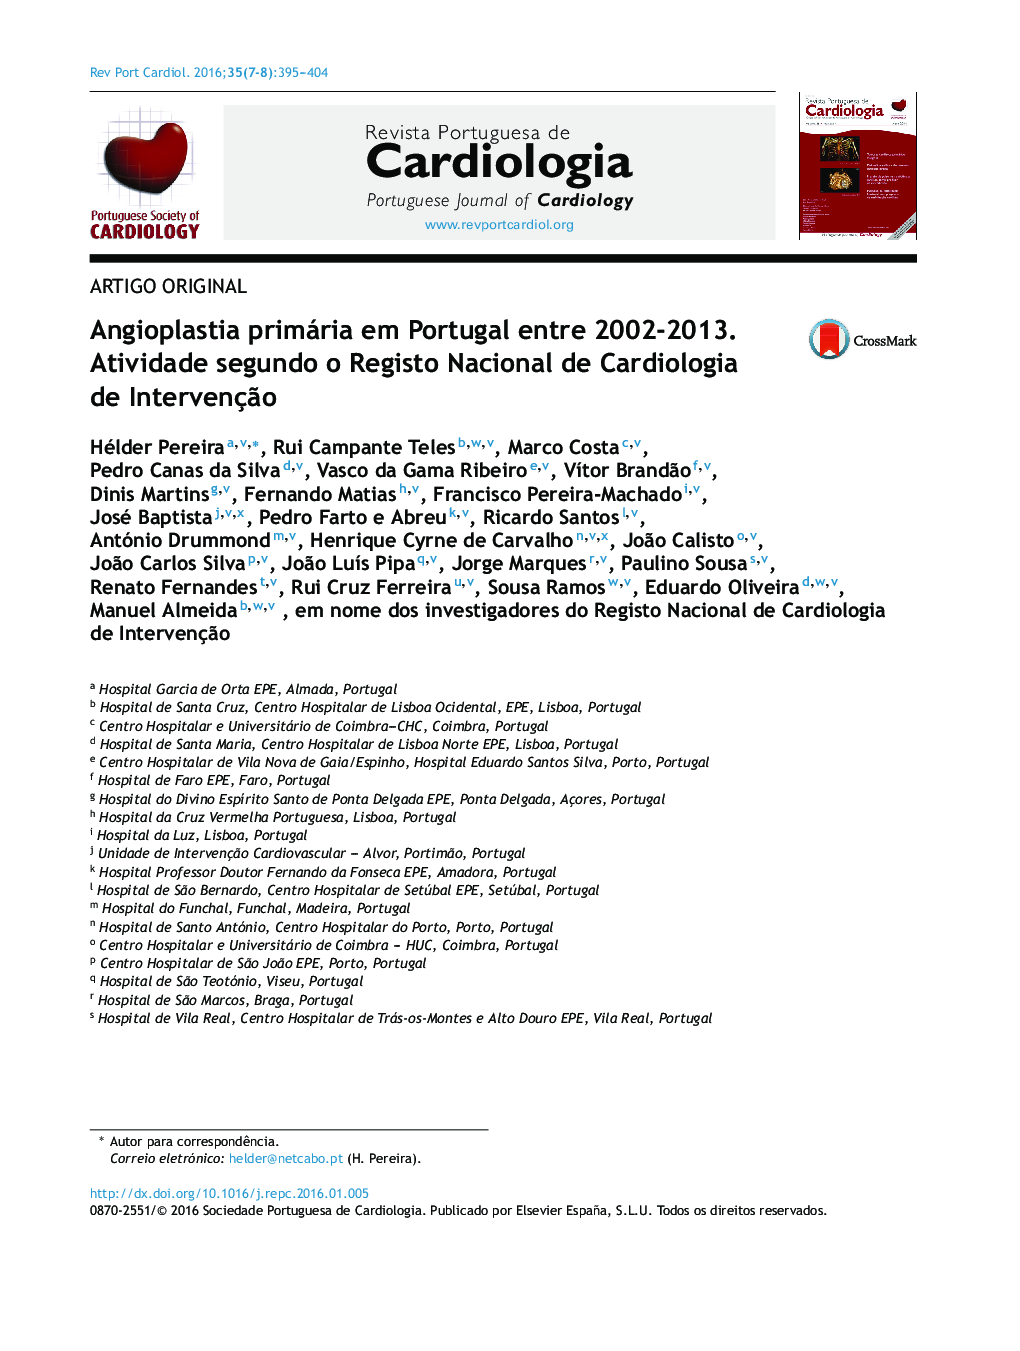 Angioplastia primária em Portugal entre 2002‐2013. Atividade segundo o Registo Nacional de Cardiologia de Intervenção